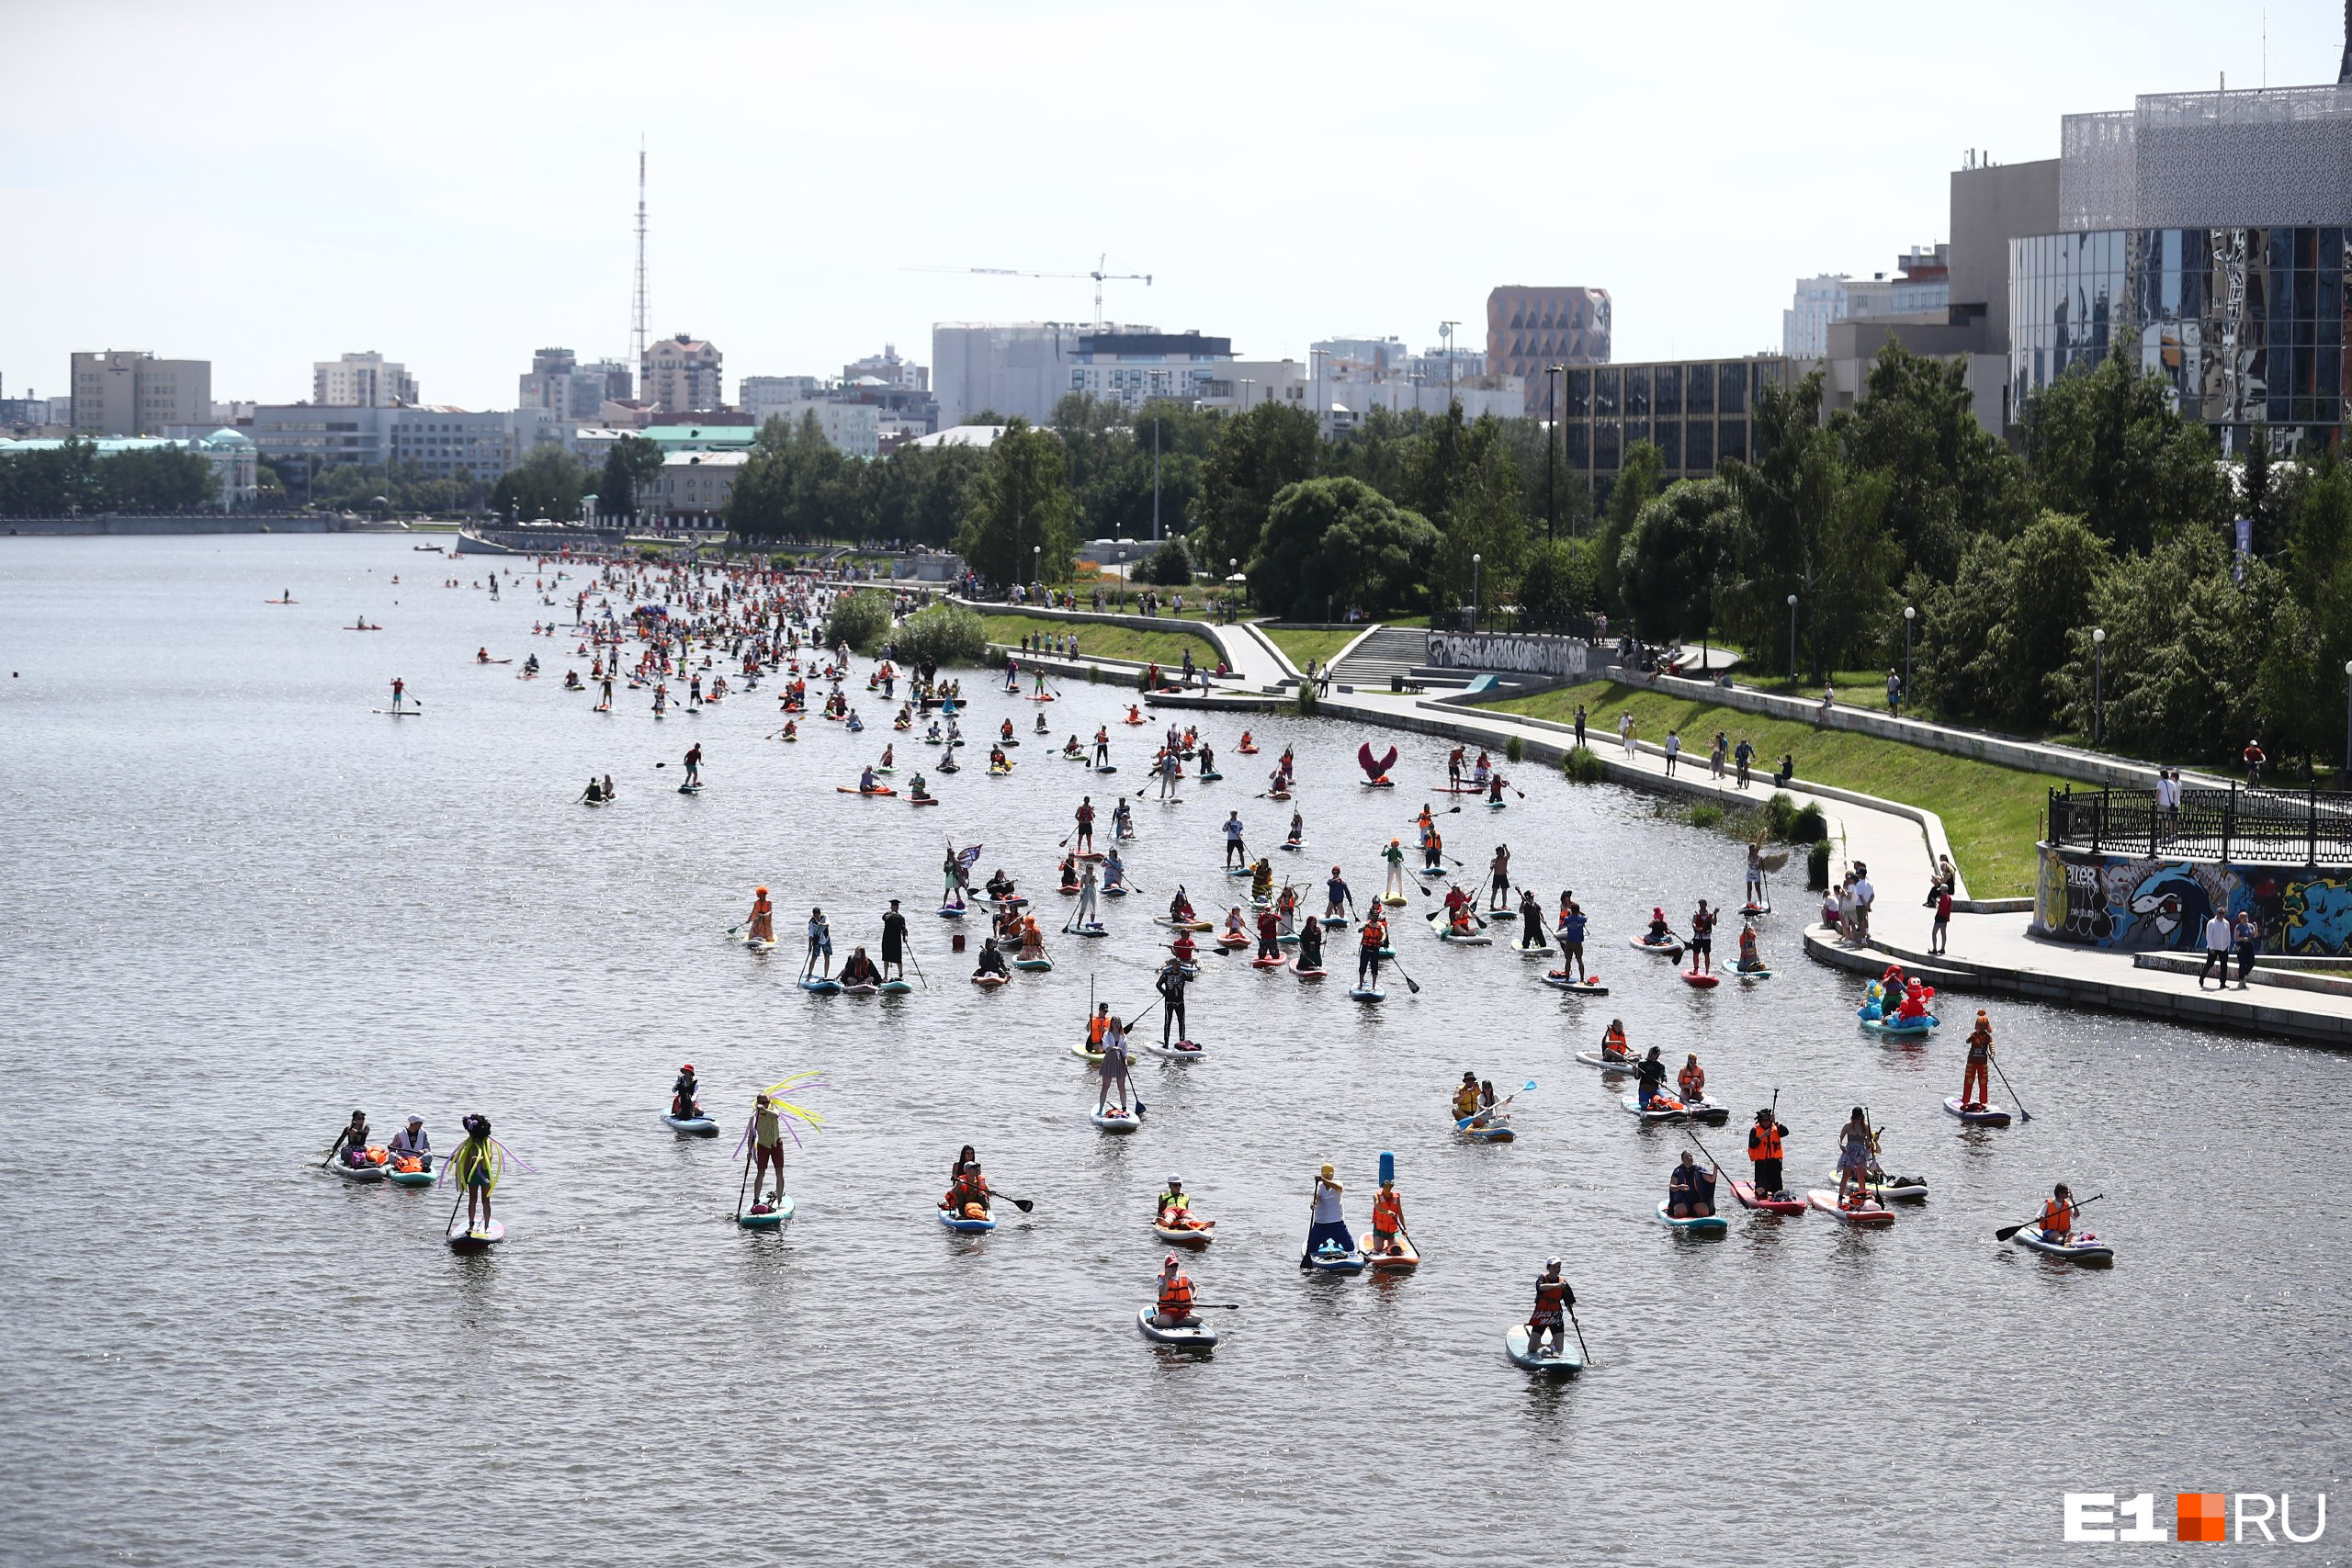 Сотни человек в карнавальных костюмах поплыли по городскому пруду. Онлайн с первого E1 SUP FEST